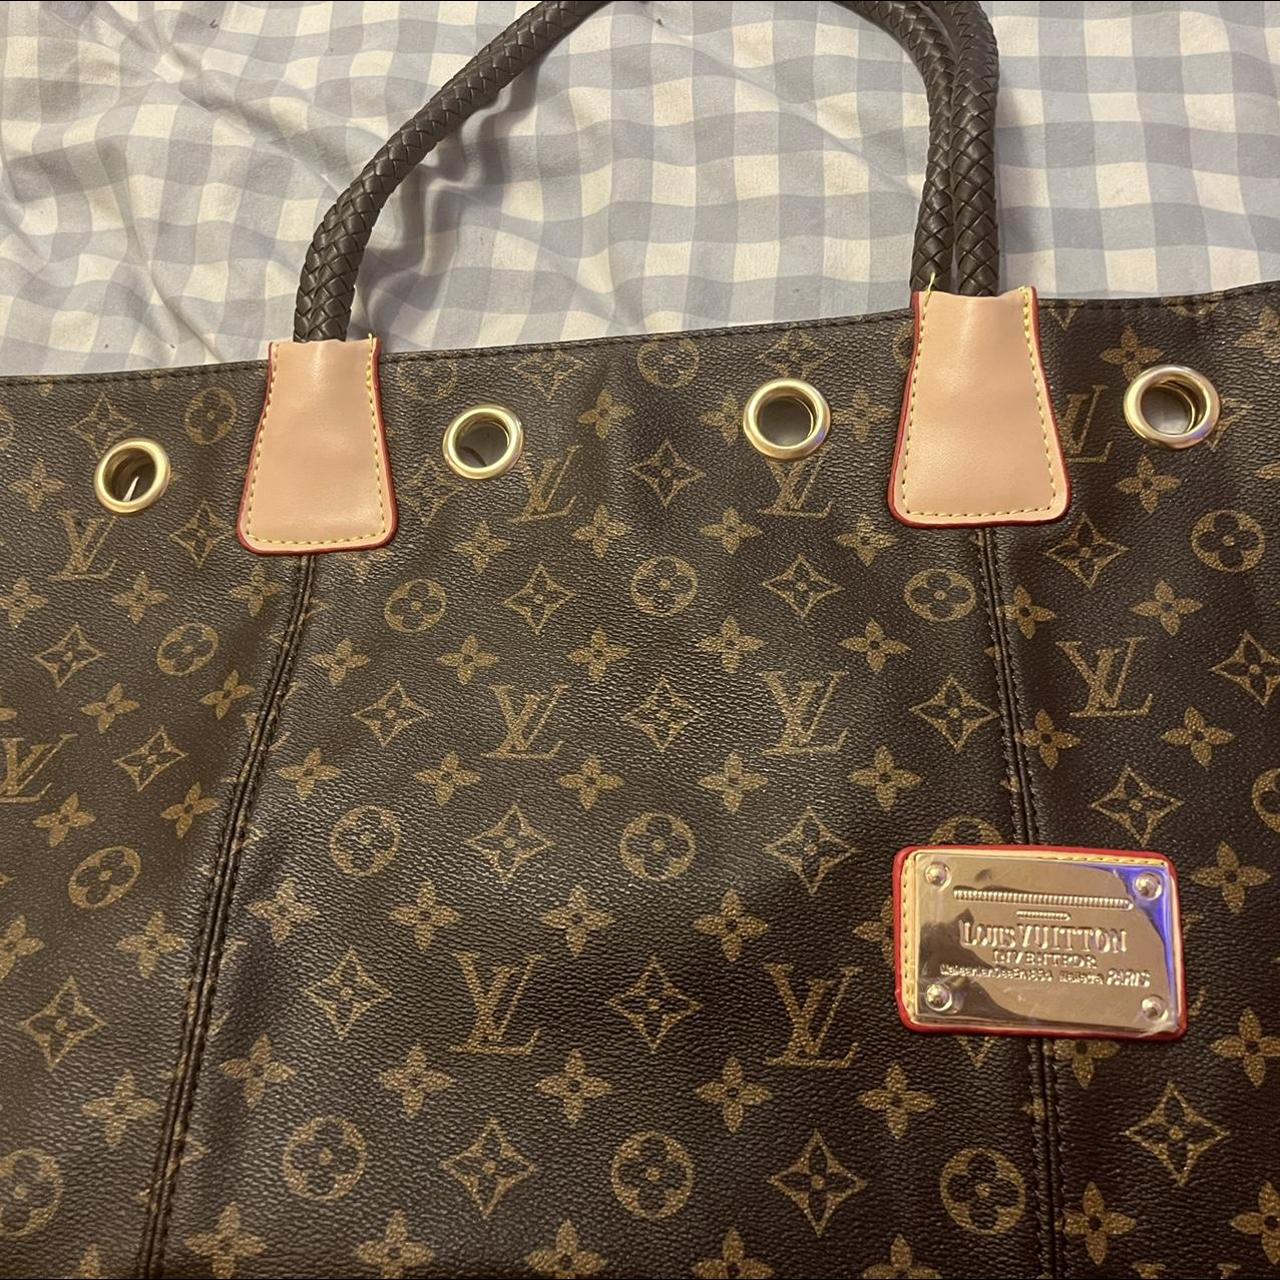 NO PAYPAL, Lv tote Elegant womens handbag 12”x22” new - Depop